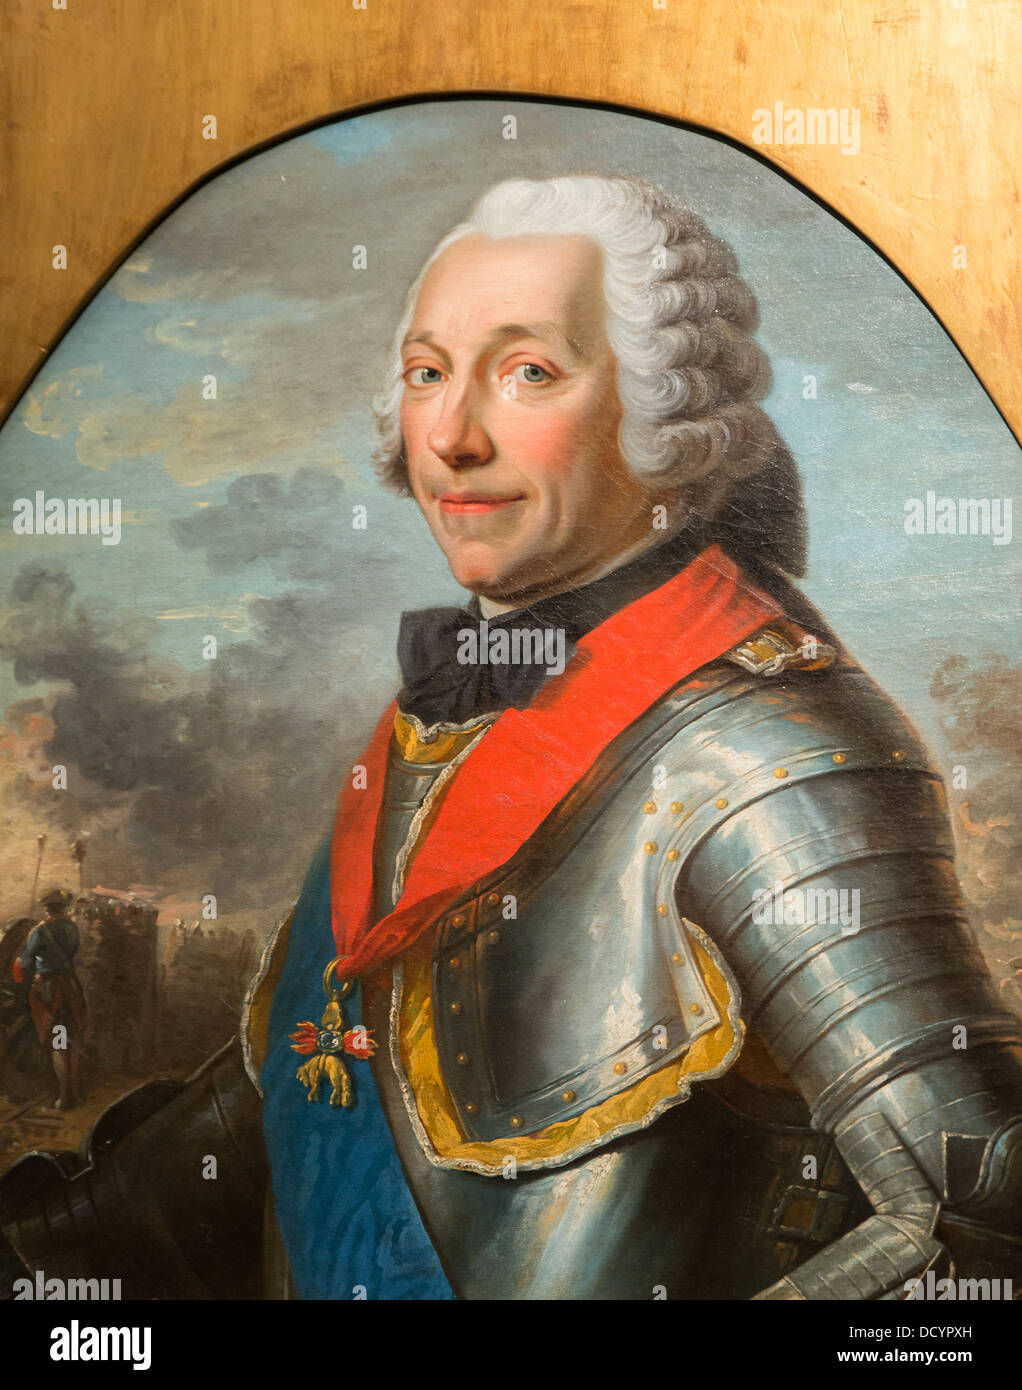 Charles-Louis-Auguste Fouquet, duc de Belle-isle, maréchal de France - Huile sur toile Anonyme, Musée de l'Armée, les Invalides Banque D'Images